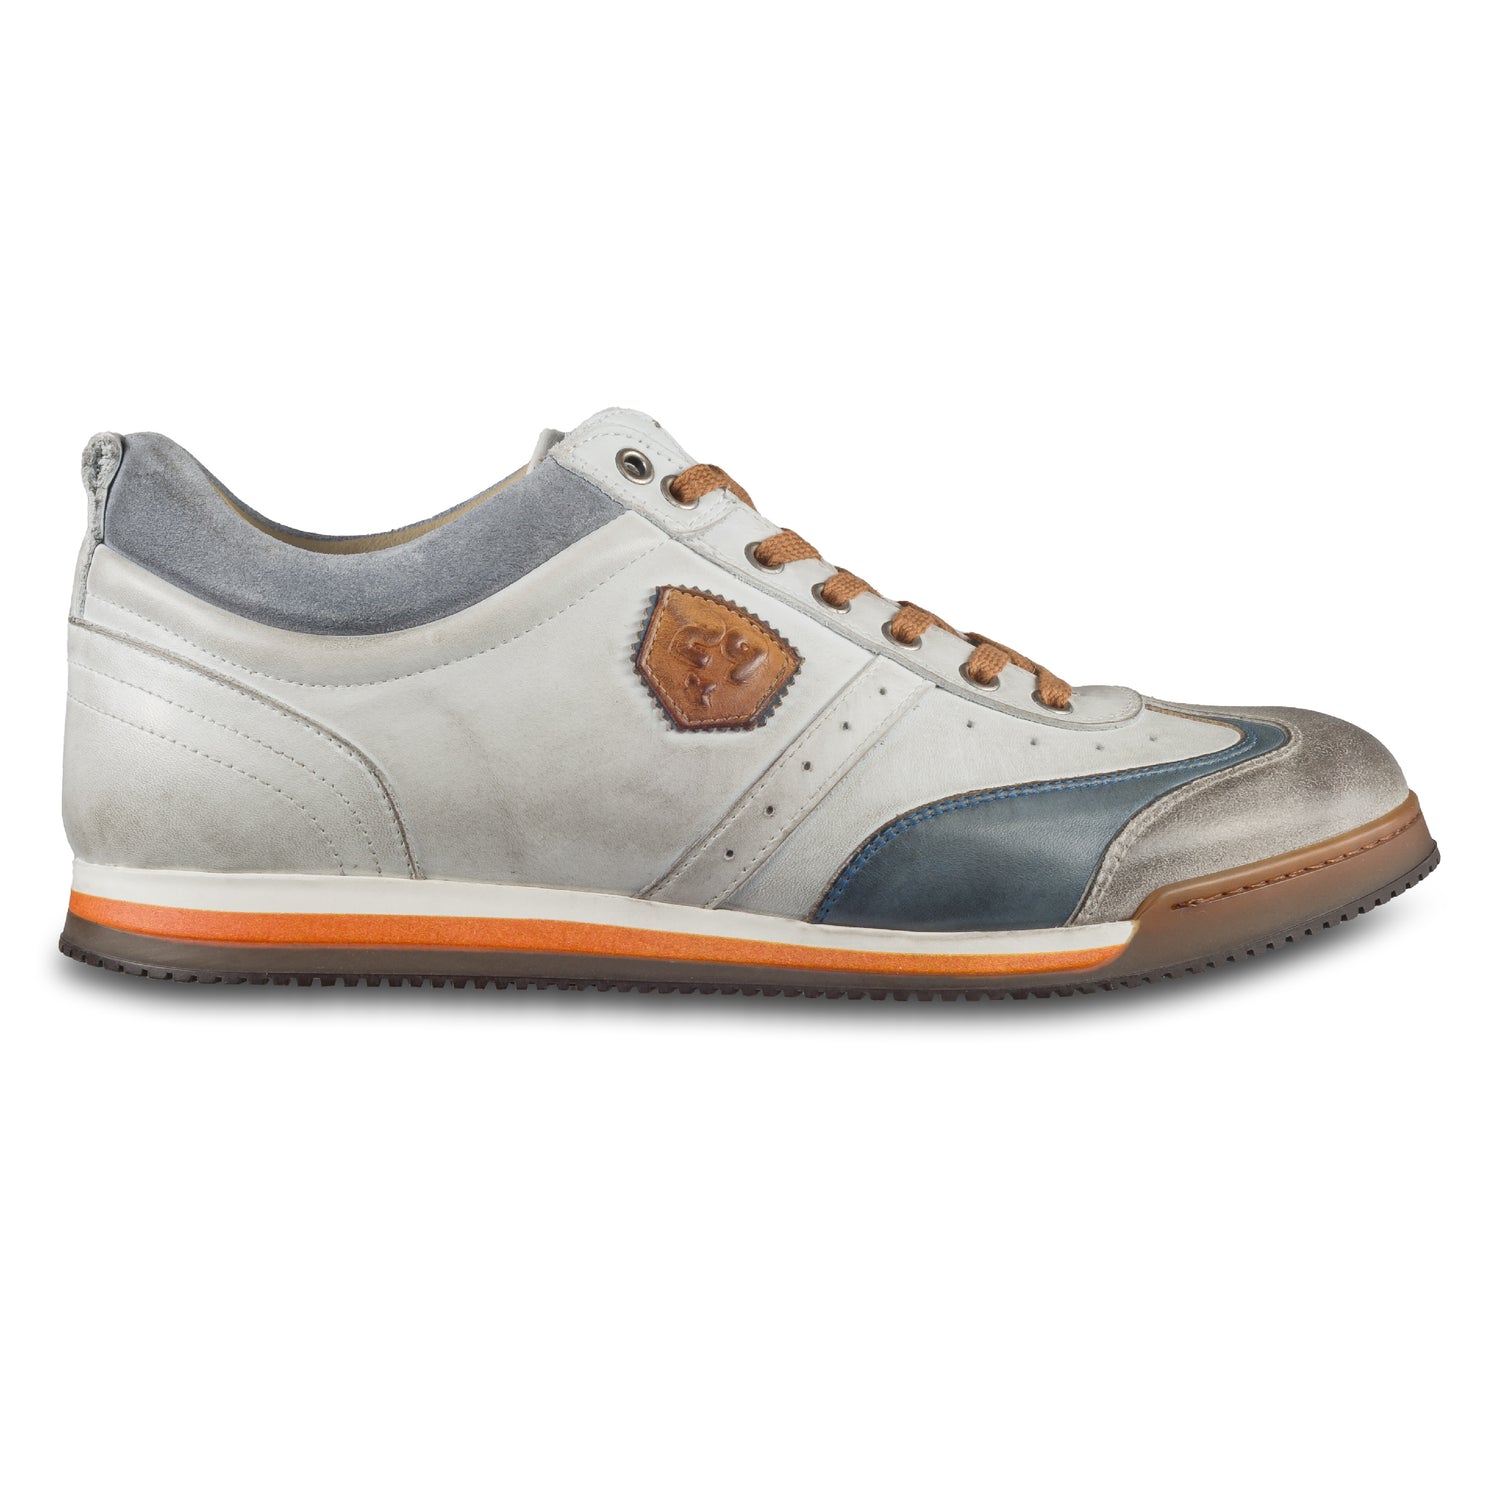 KAMO-GUTSU Herren Leder Sneaker weiß / grau / blau, Retro-Optik. Modell SCUDO-005 bianco combi. Handgefertigt in Italien. Ansicht der Außenseite rechter Schuh. 